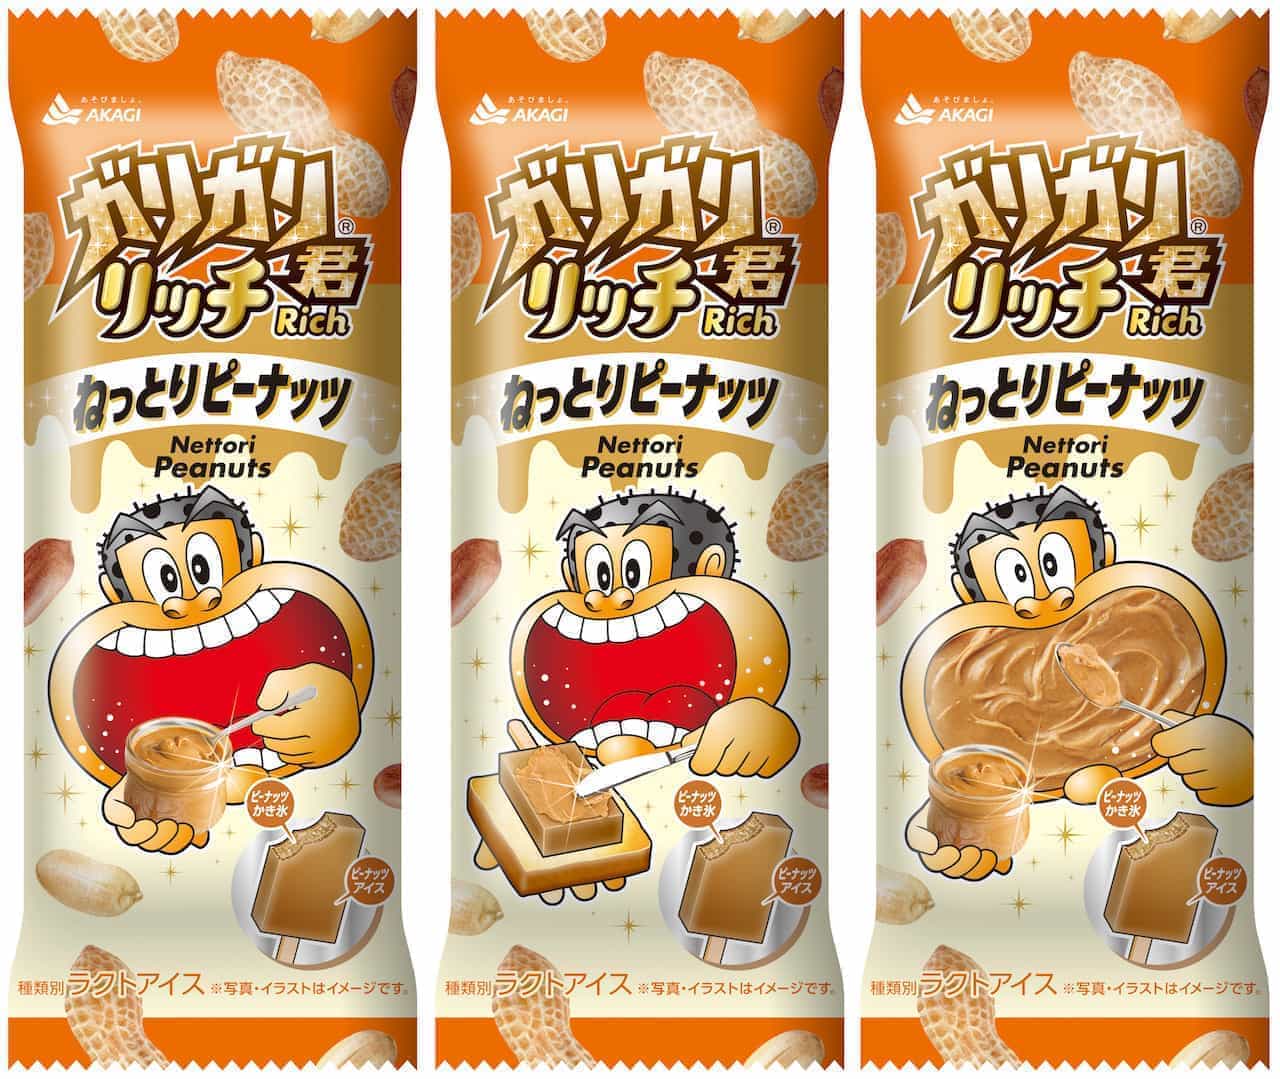 Akagi Nyugyo "Garigari-kun Rich Sticky Peanut